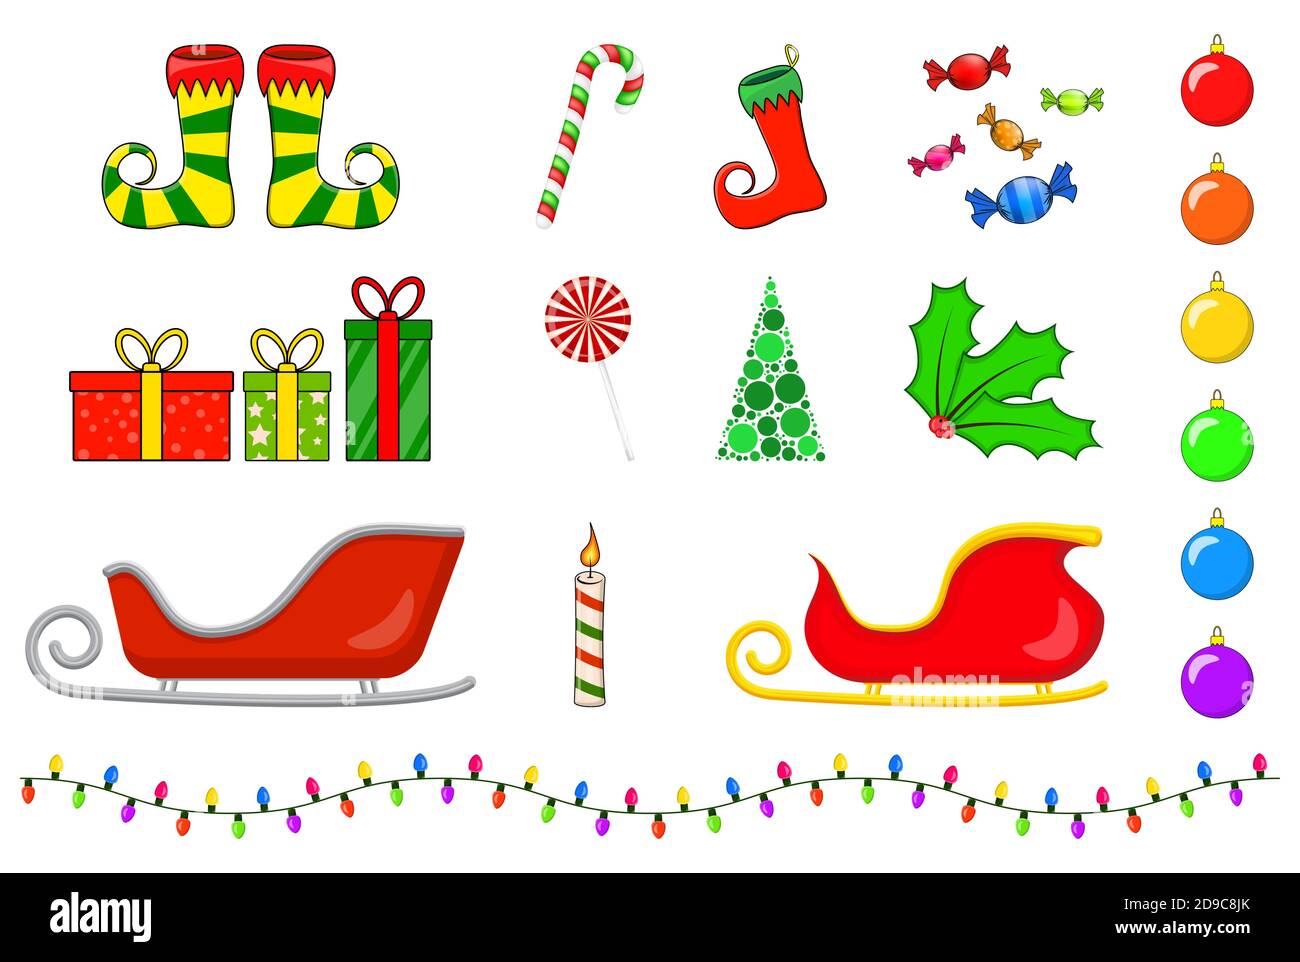 Weihnachts-Symbole-Kollektion. Große Reihe von Weihnachten Symbole. Saisonale Cartoon-Illustrationen isoliert auf weiß. Urlaub Ornament und Dekorationen. Holly Berry, Stock Vektor